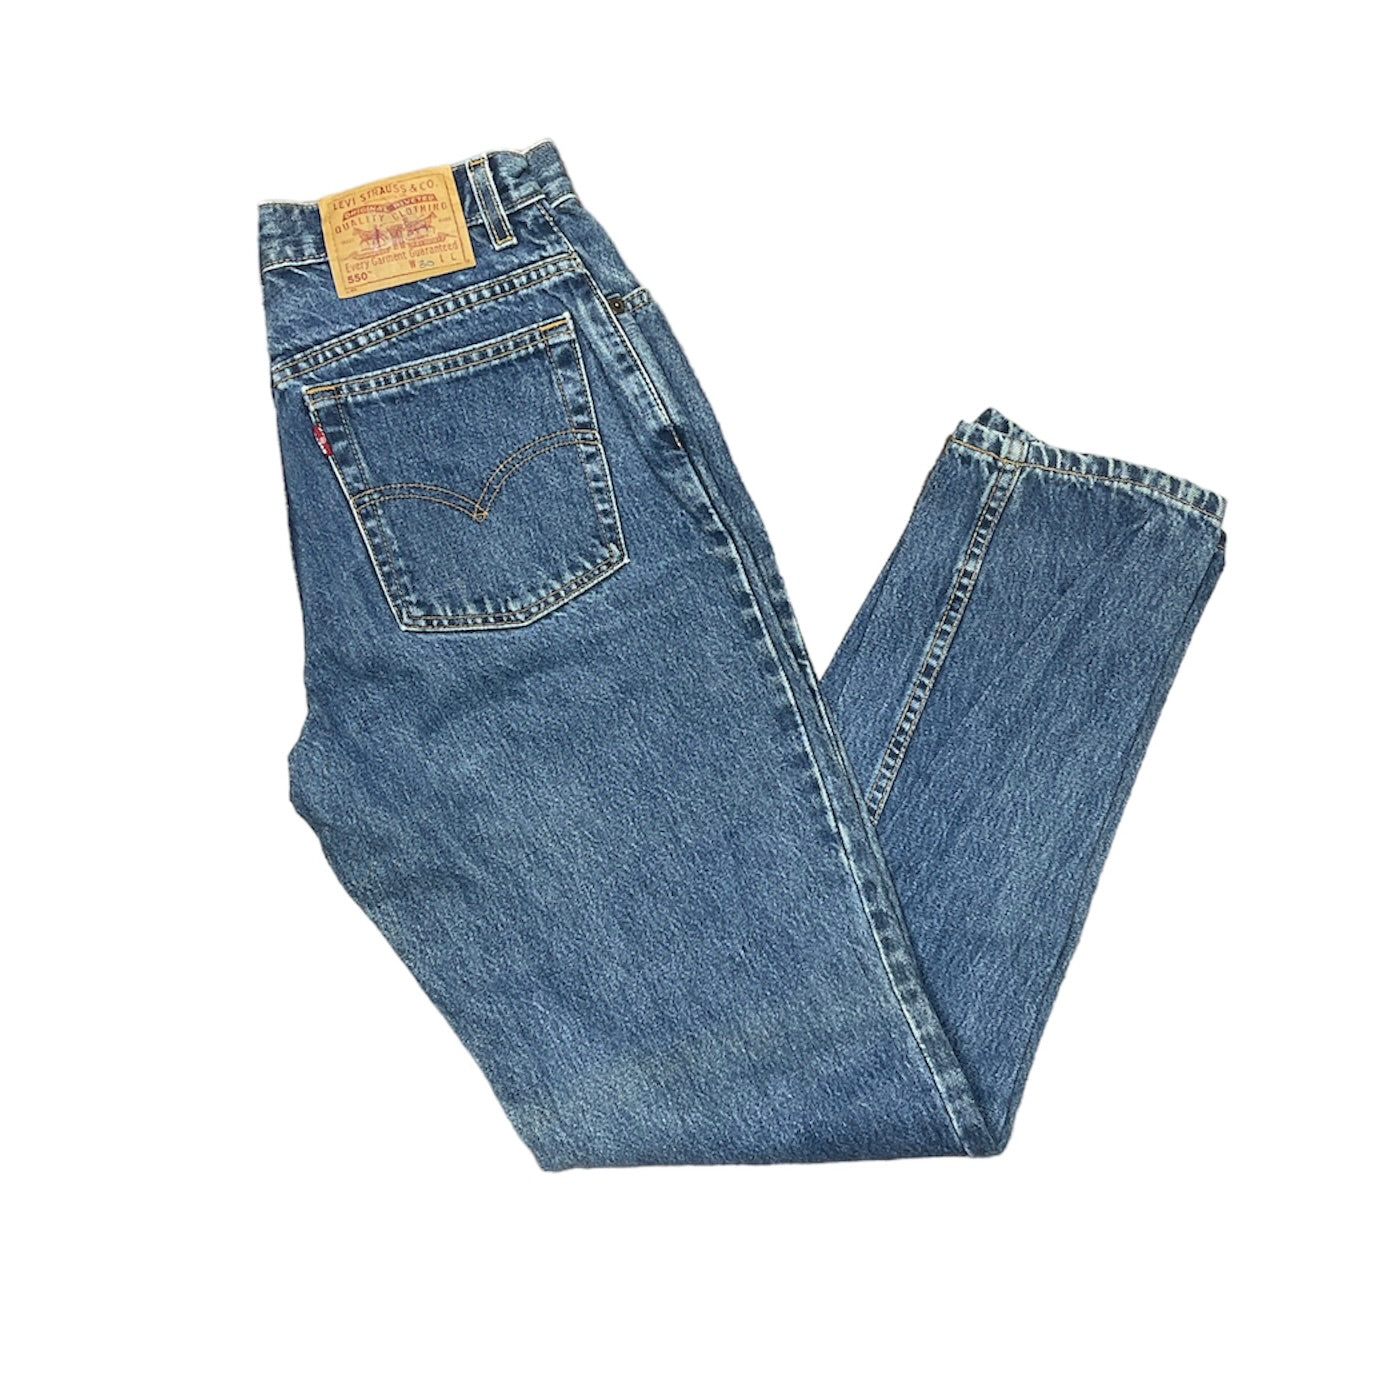 Vintage Levis 550 Blue Jeans (W30)